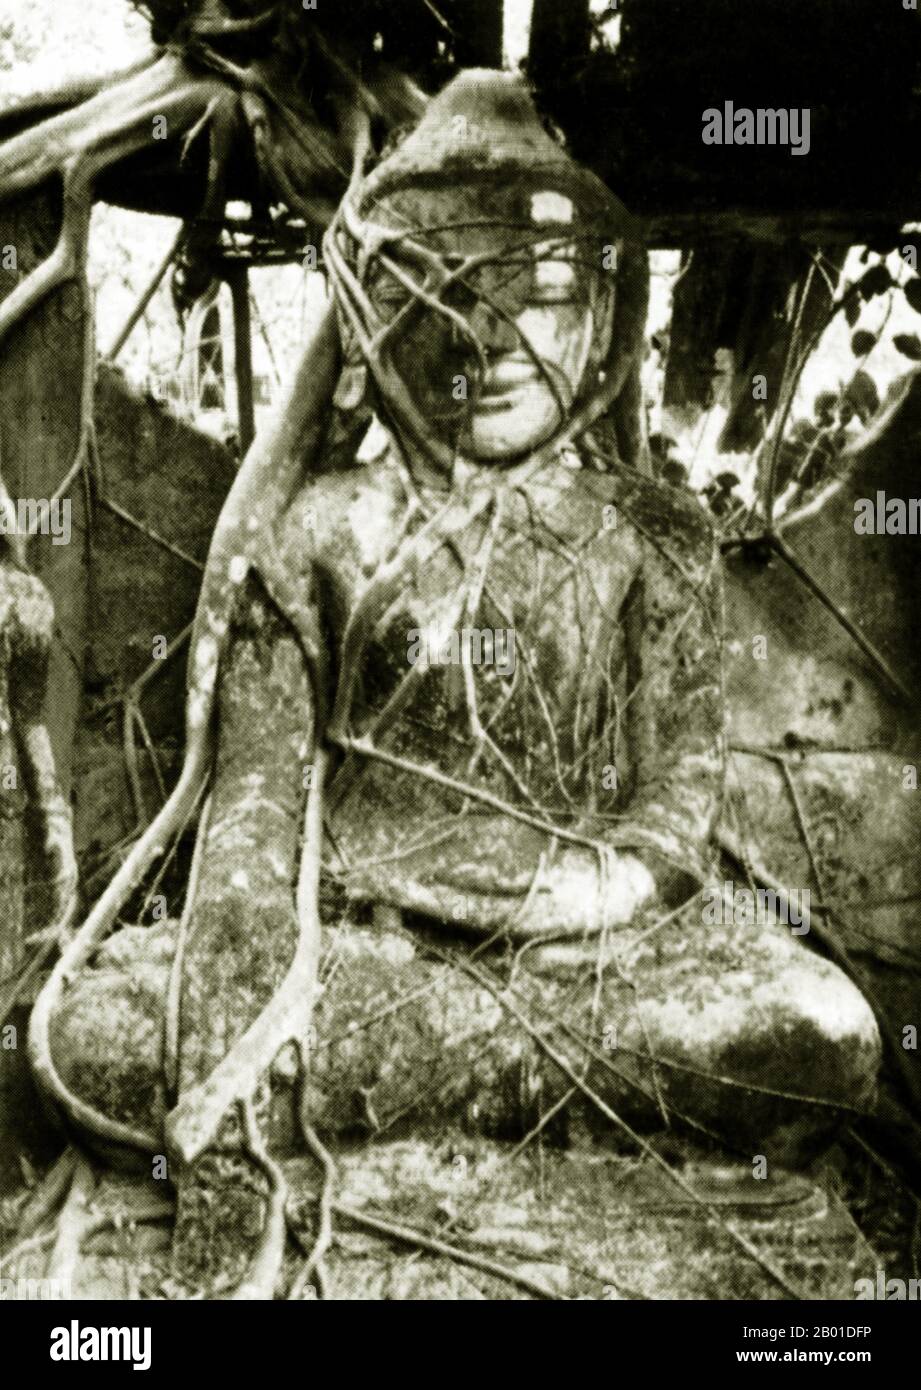 Birmanie : une image du Bouddha endîné de vignes, Thaton, Birmanie, vers 1892-1896. La légende attribue la première doctrine bouddhiste en Birmanie à 228 BCE lorsque Sonna et Uttara, deux ambassadeurs de l'empereur Ashoka le Grand de l'Inde, sont venus au pays avec des textes sacrés. Cependant, l'ère d'or du bouddhisme a vraiment commencé dans le 11th siècle après que le roi Anawrahta de Pagan (Bagan) a été converti au bouddhisme Theravada. Aujourd'hui, 89% de la population birmane est bouddhiste Theravada. Banque D'Images